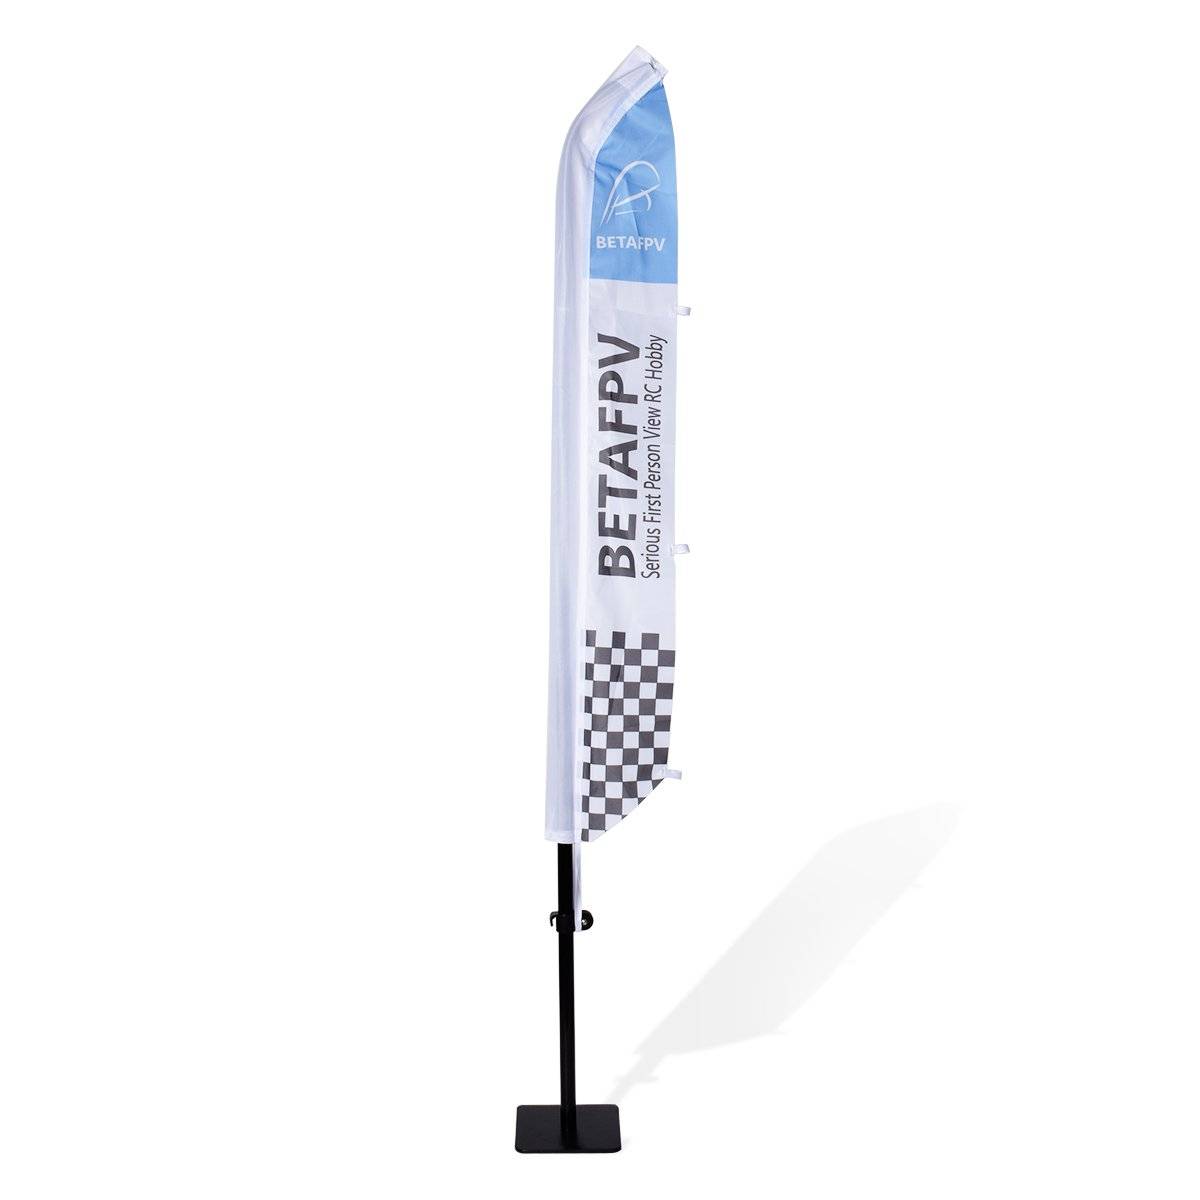 BETAFPV Race Flag + LED Strip Light